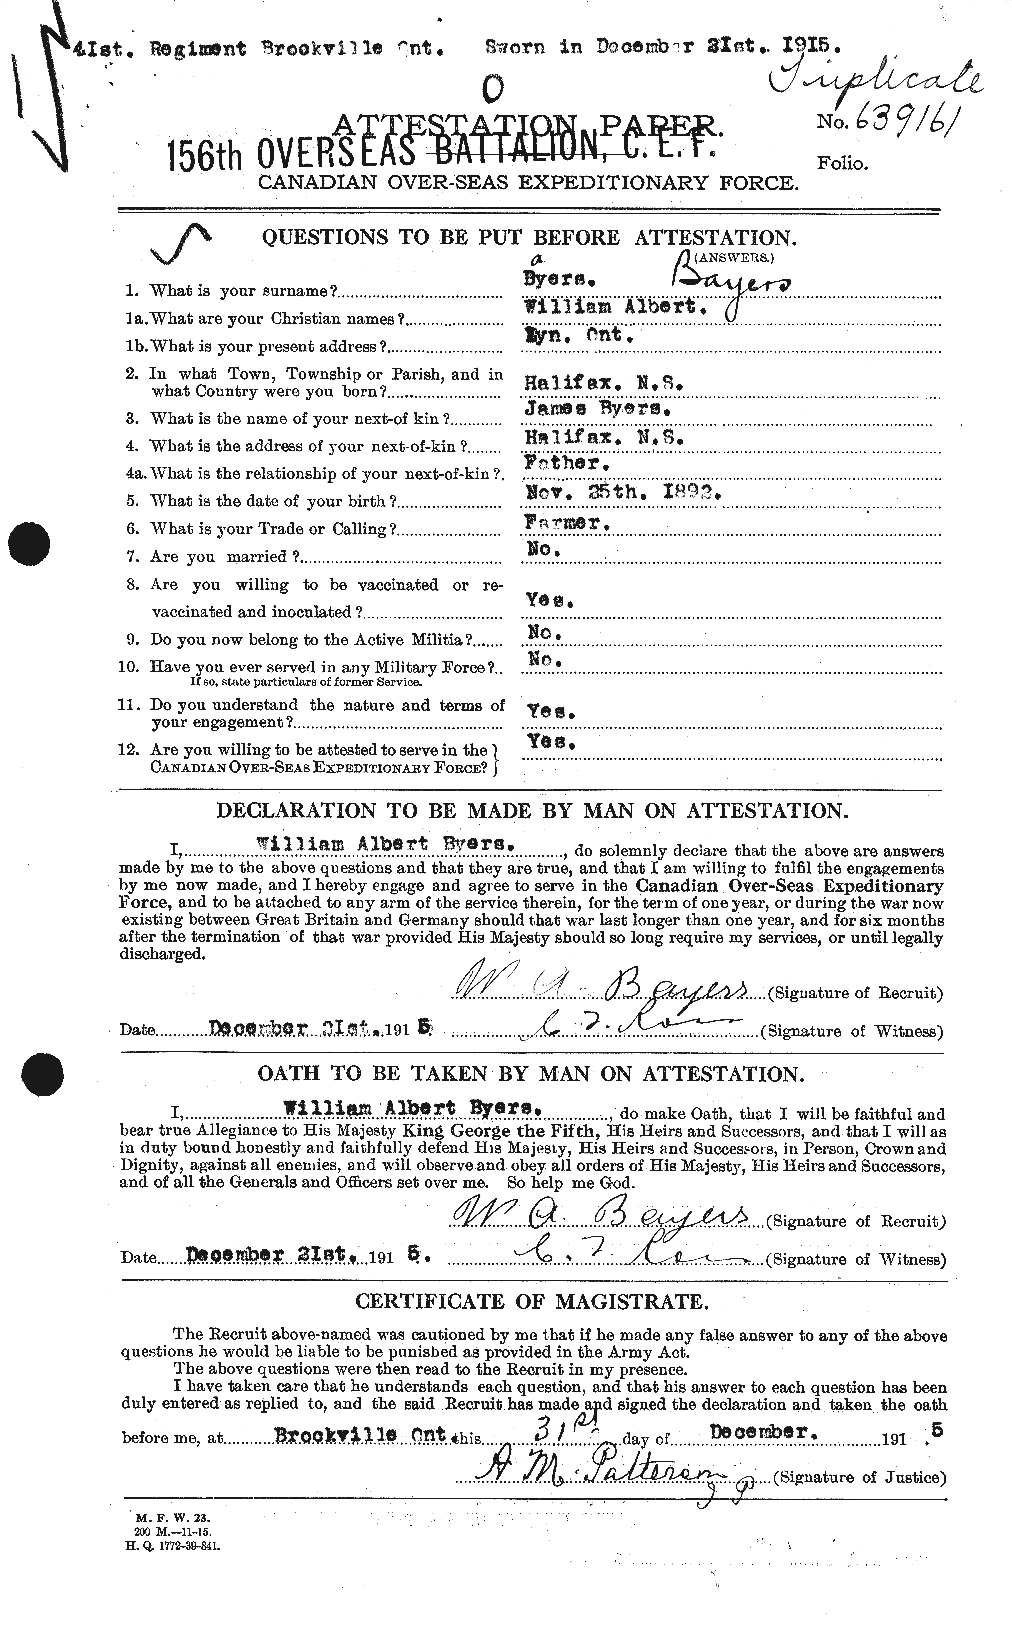 Dossiers du Personnel de la Première Guerre mondiale - CEC 229577a